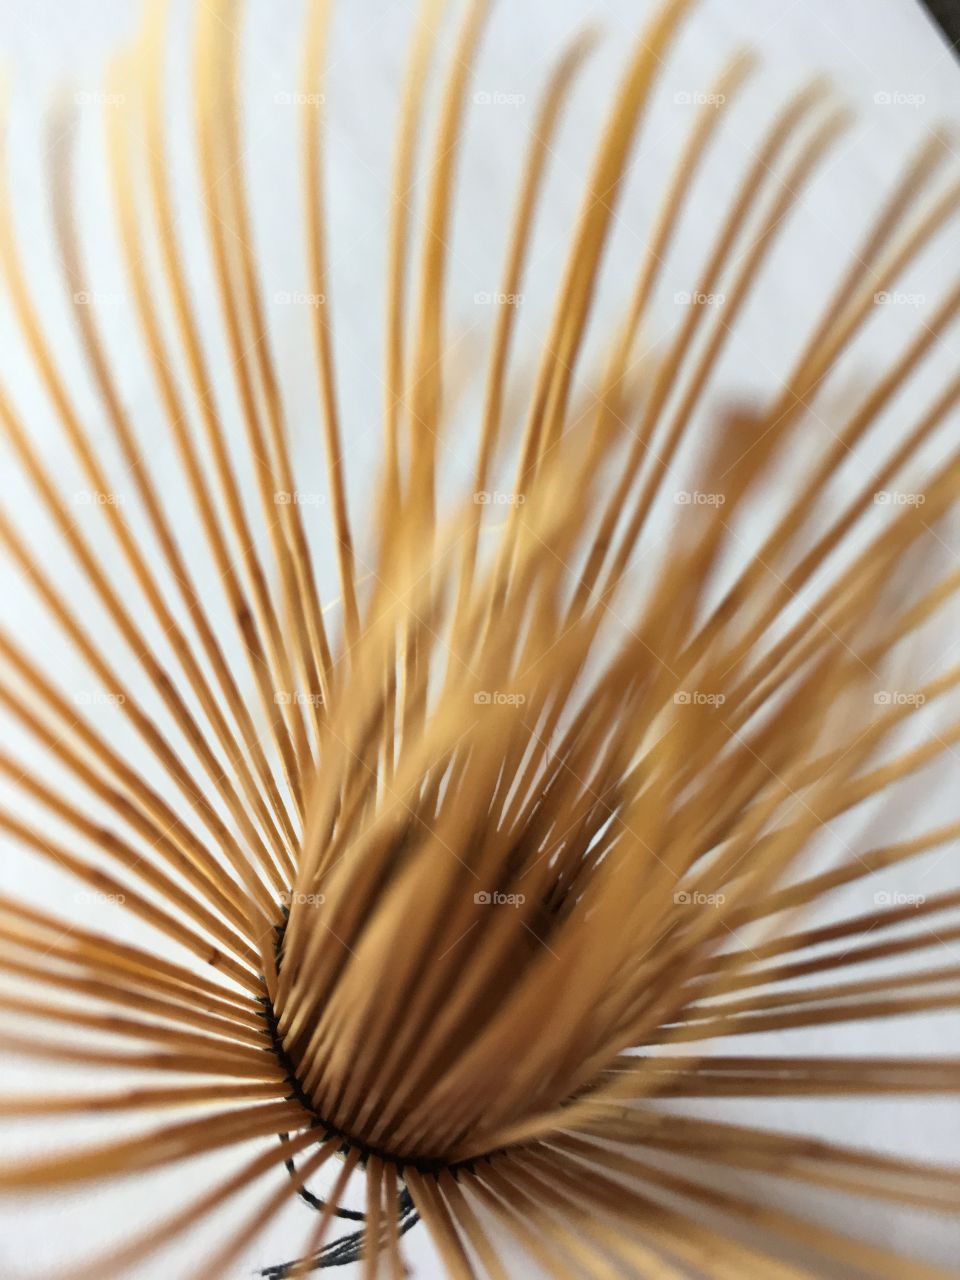 Bamboo matcha whisk close up